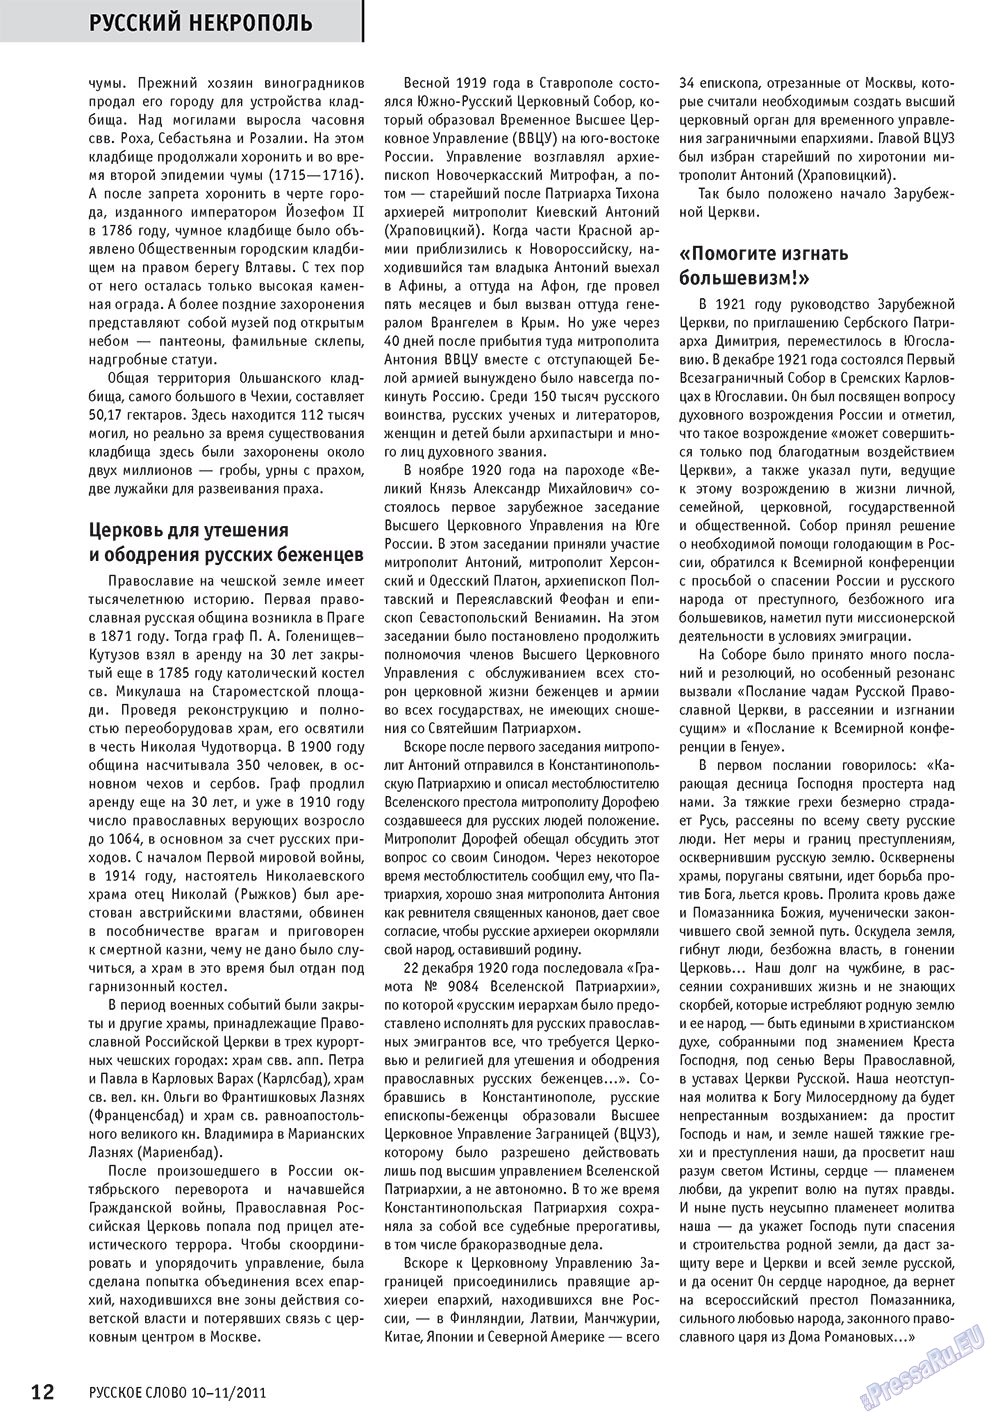 Русское слово (журнал). 2011 год, номер 10, стр. 14